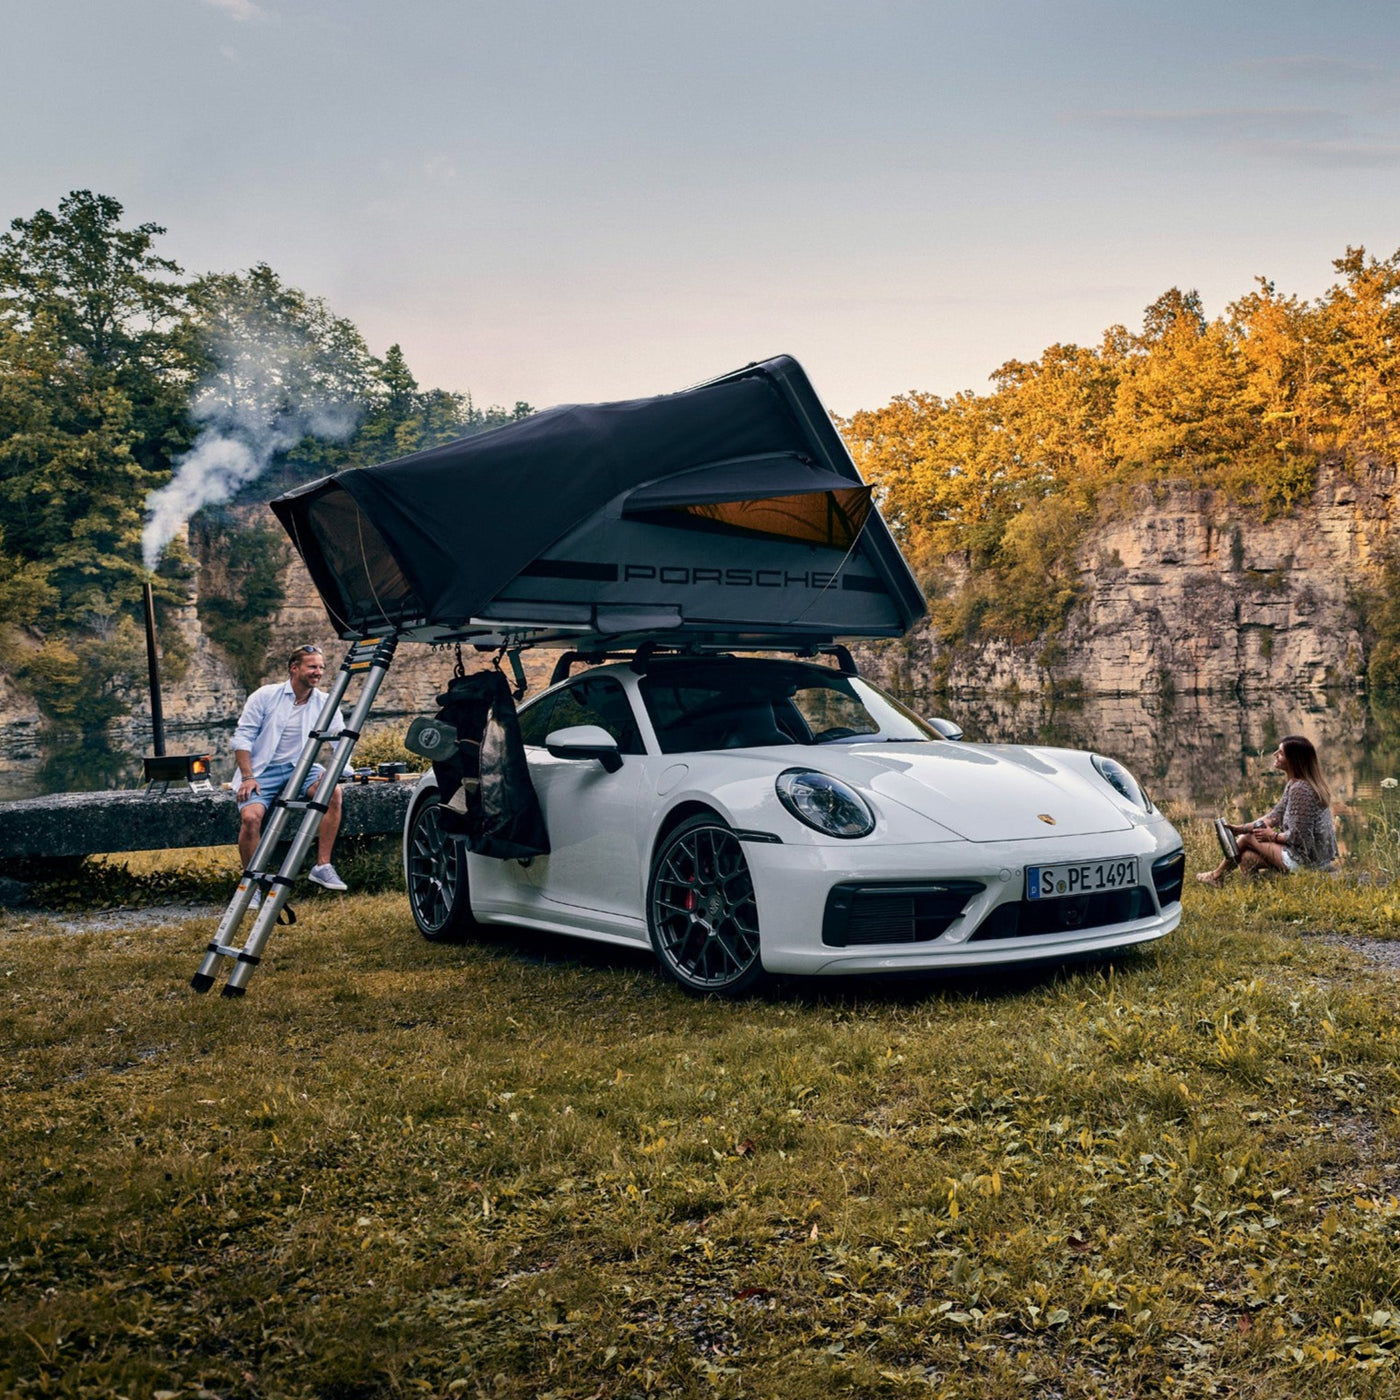 Porsche Roof Tent